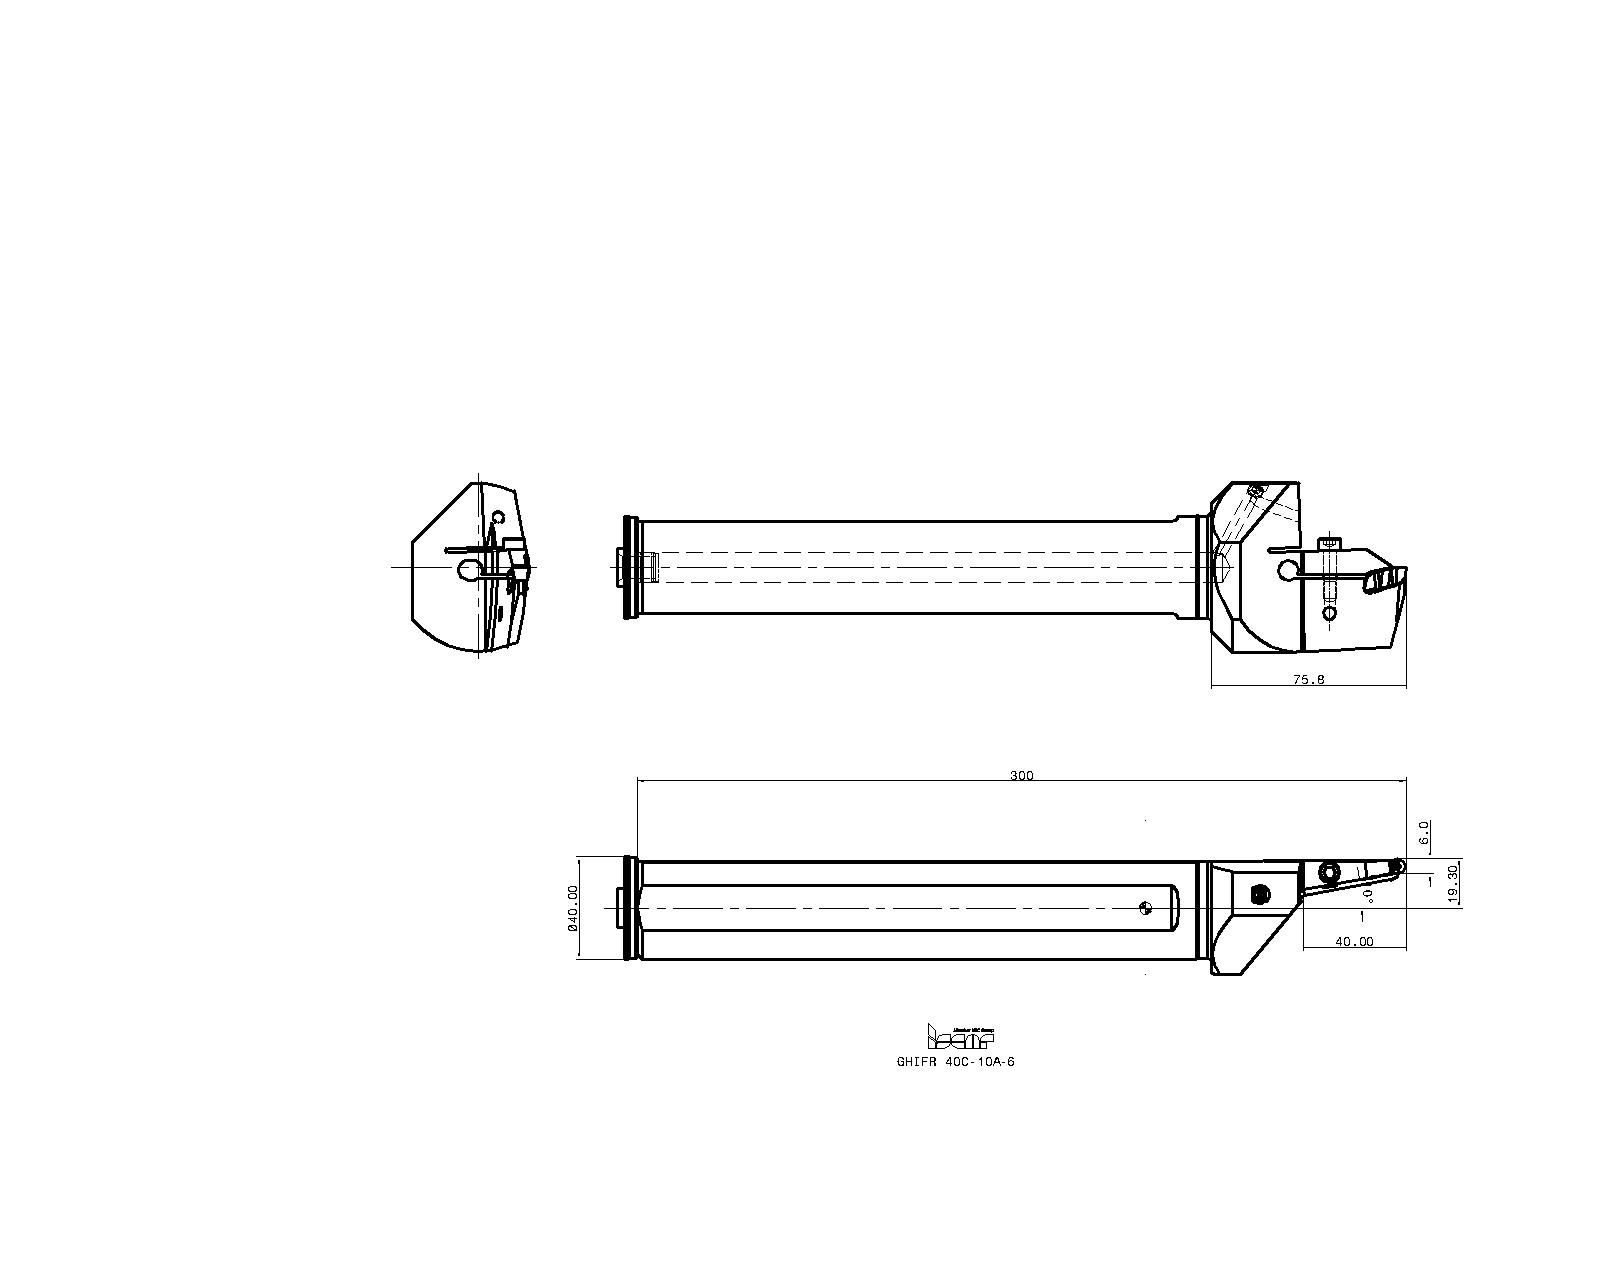 イスカル カットグリップ GHIFR 40C-10A-6 電動工具